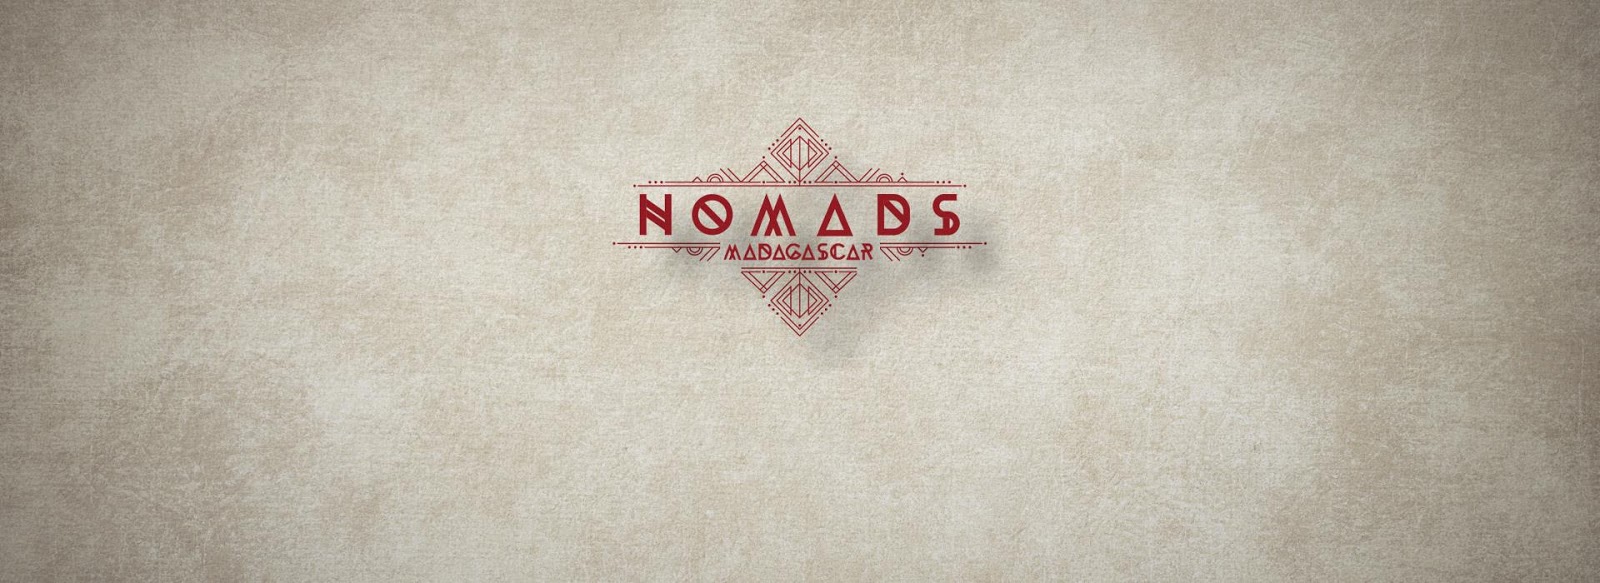 Ποιος θα παρουσιάσει το Nomads 2; Πώς θα ειναι; - Φωτογραφία 1